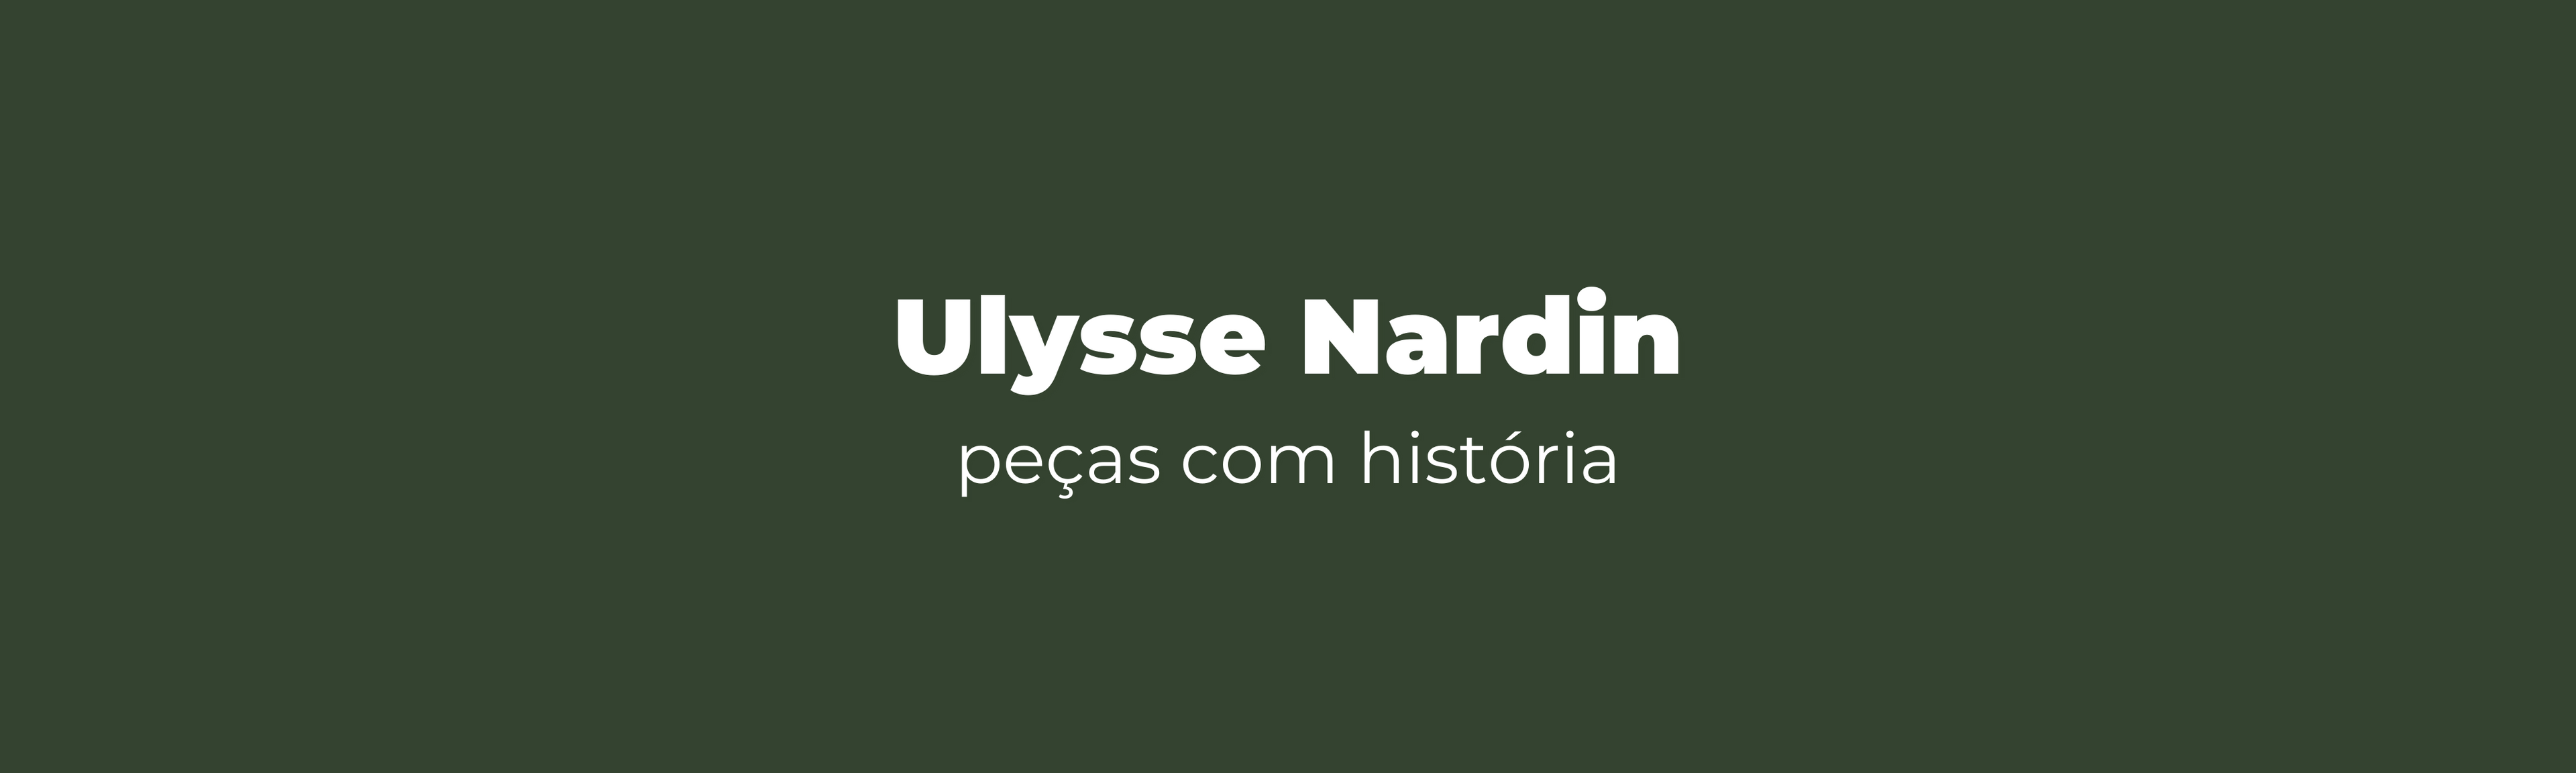 Ulysse Nardin peças com história veentx